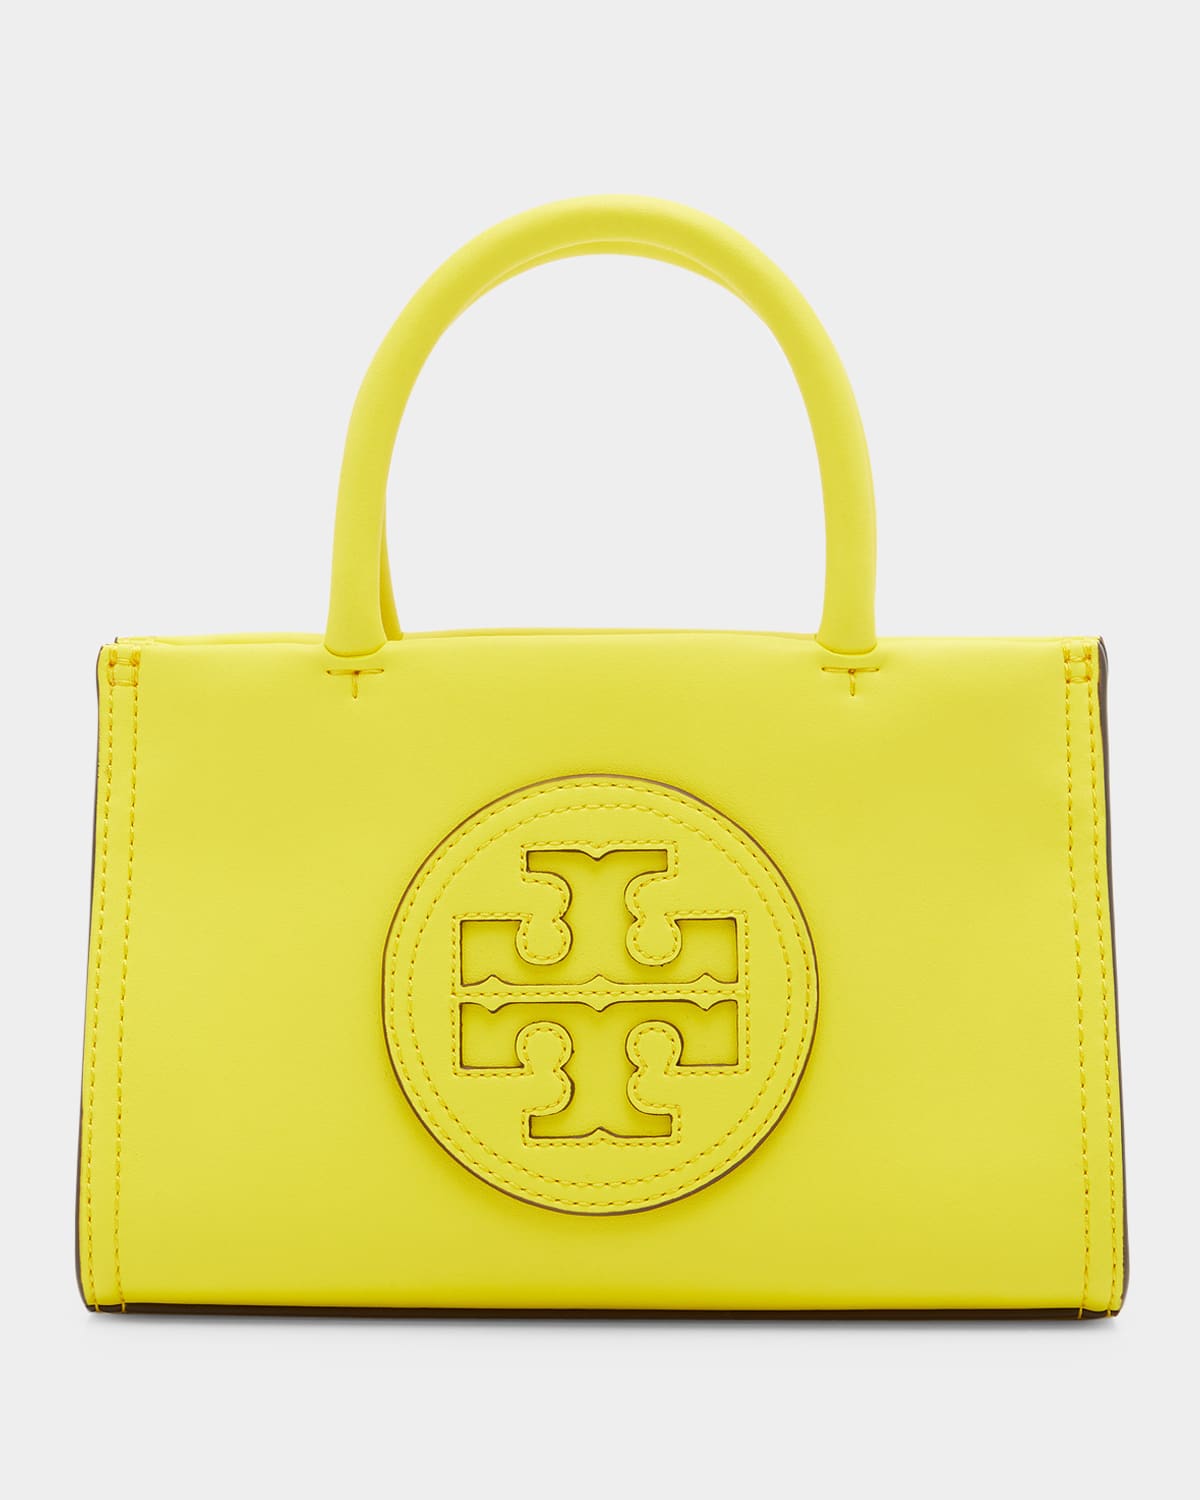 Tory Burch Yellow Handbag | Neiman Marcus